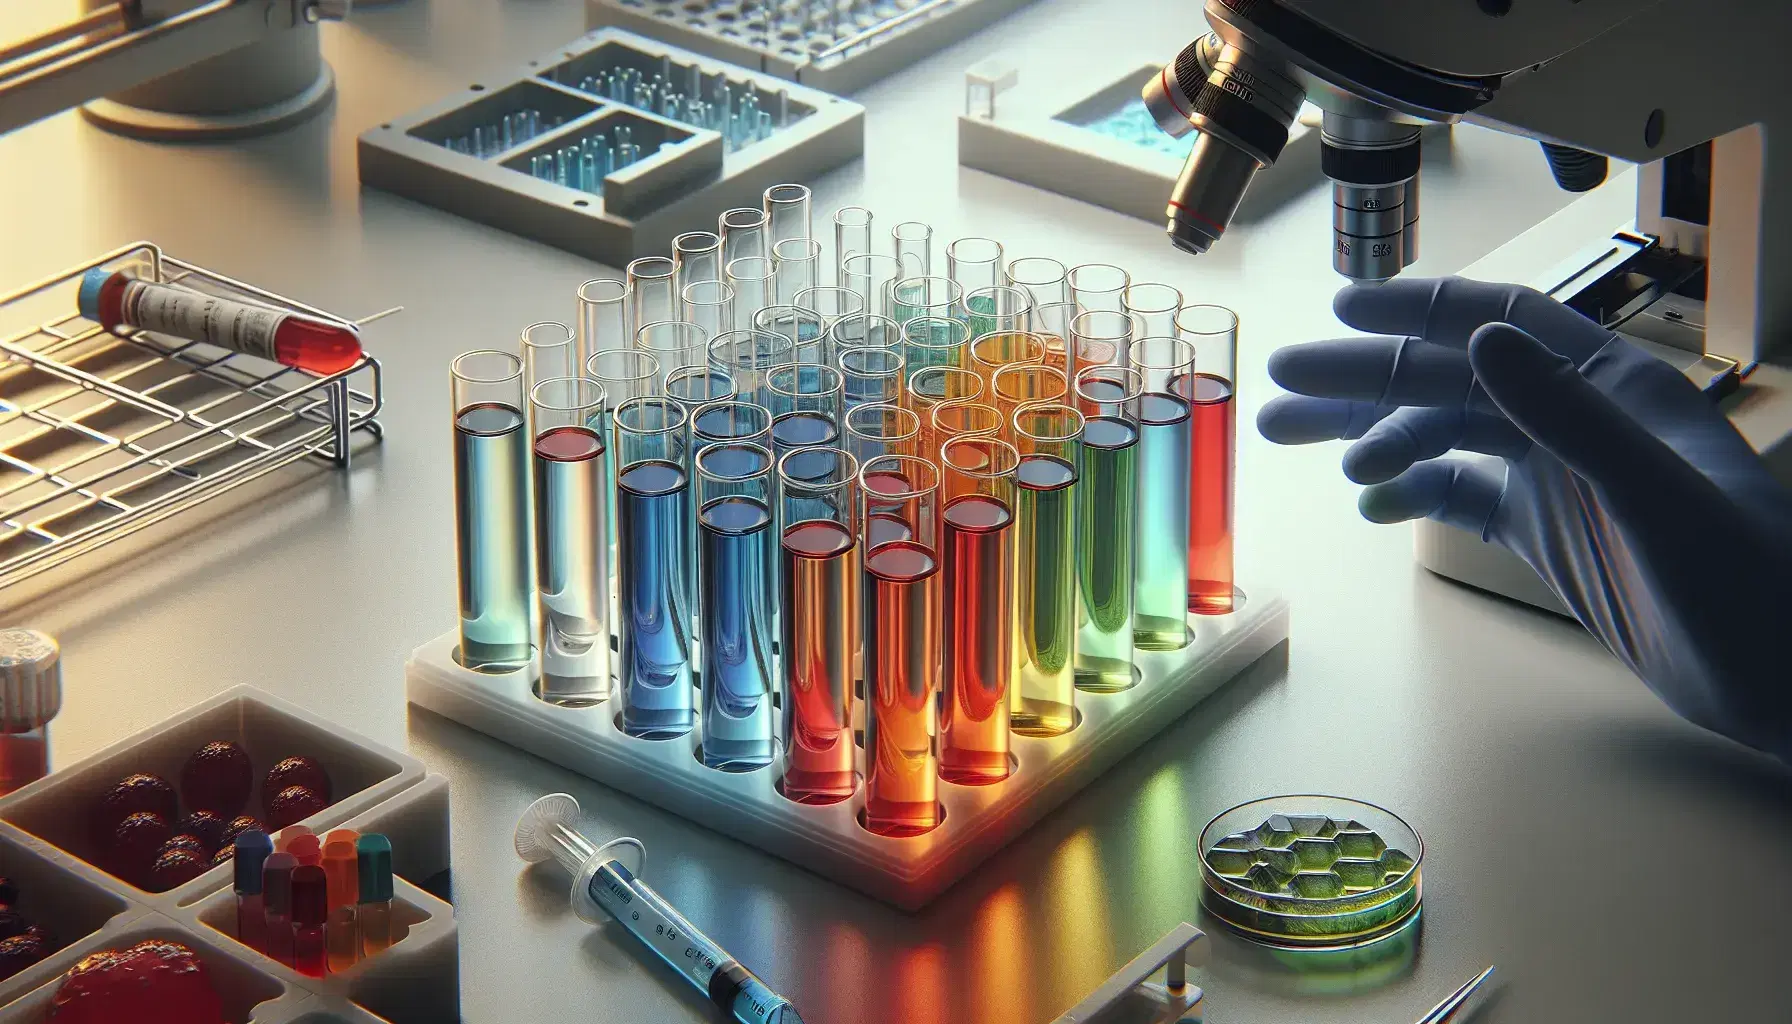 Primer plano de tubos de ensayo con líquidos de colores en gradiente en un soporte, con un microscopio al fondo y una mano enguantada sosteniendo un tubo, en un laboratorio de investigación.